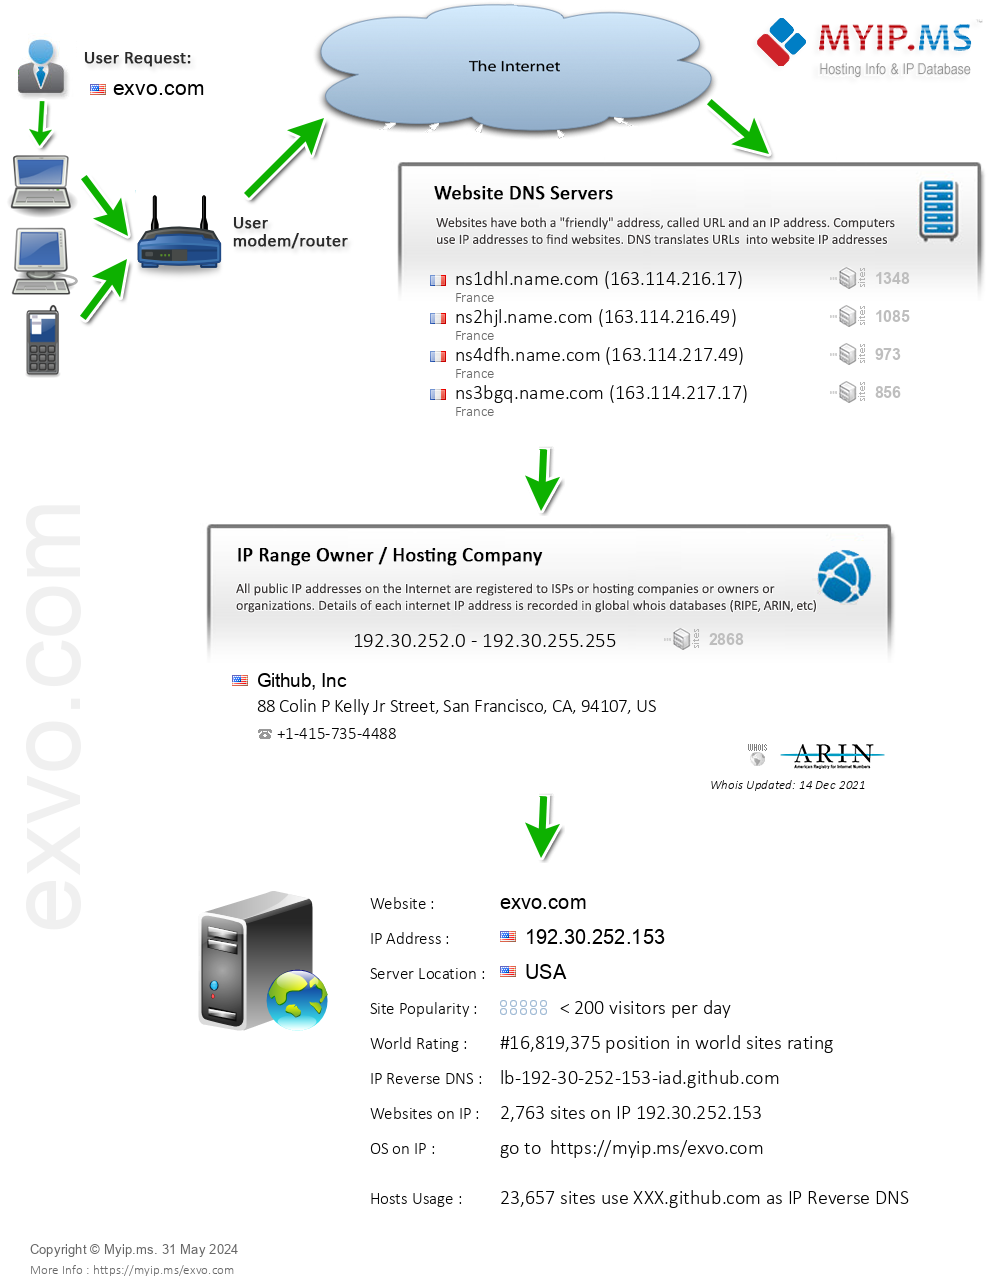 Exvo.com - Website Hosting Visual IP Diagram